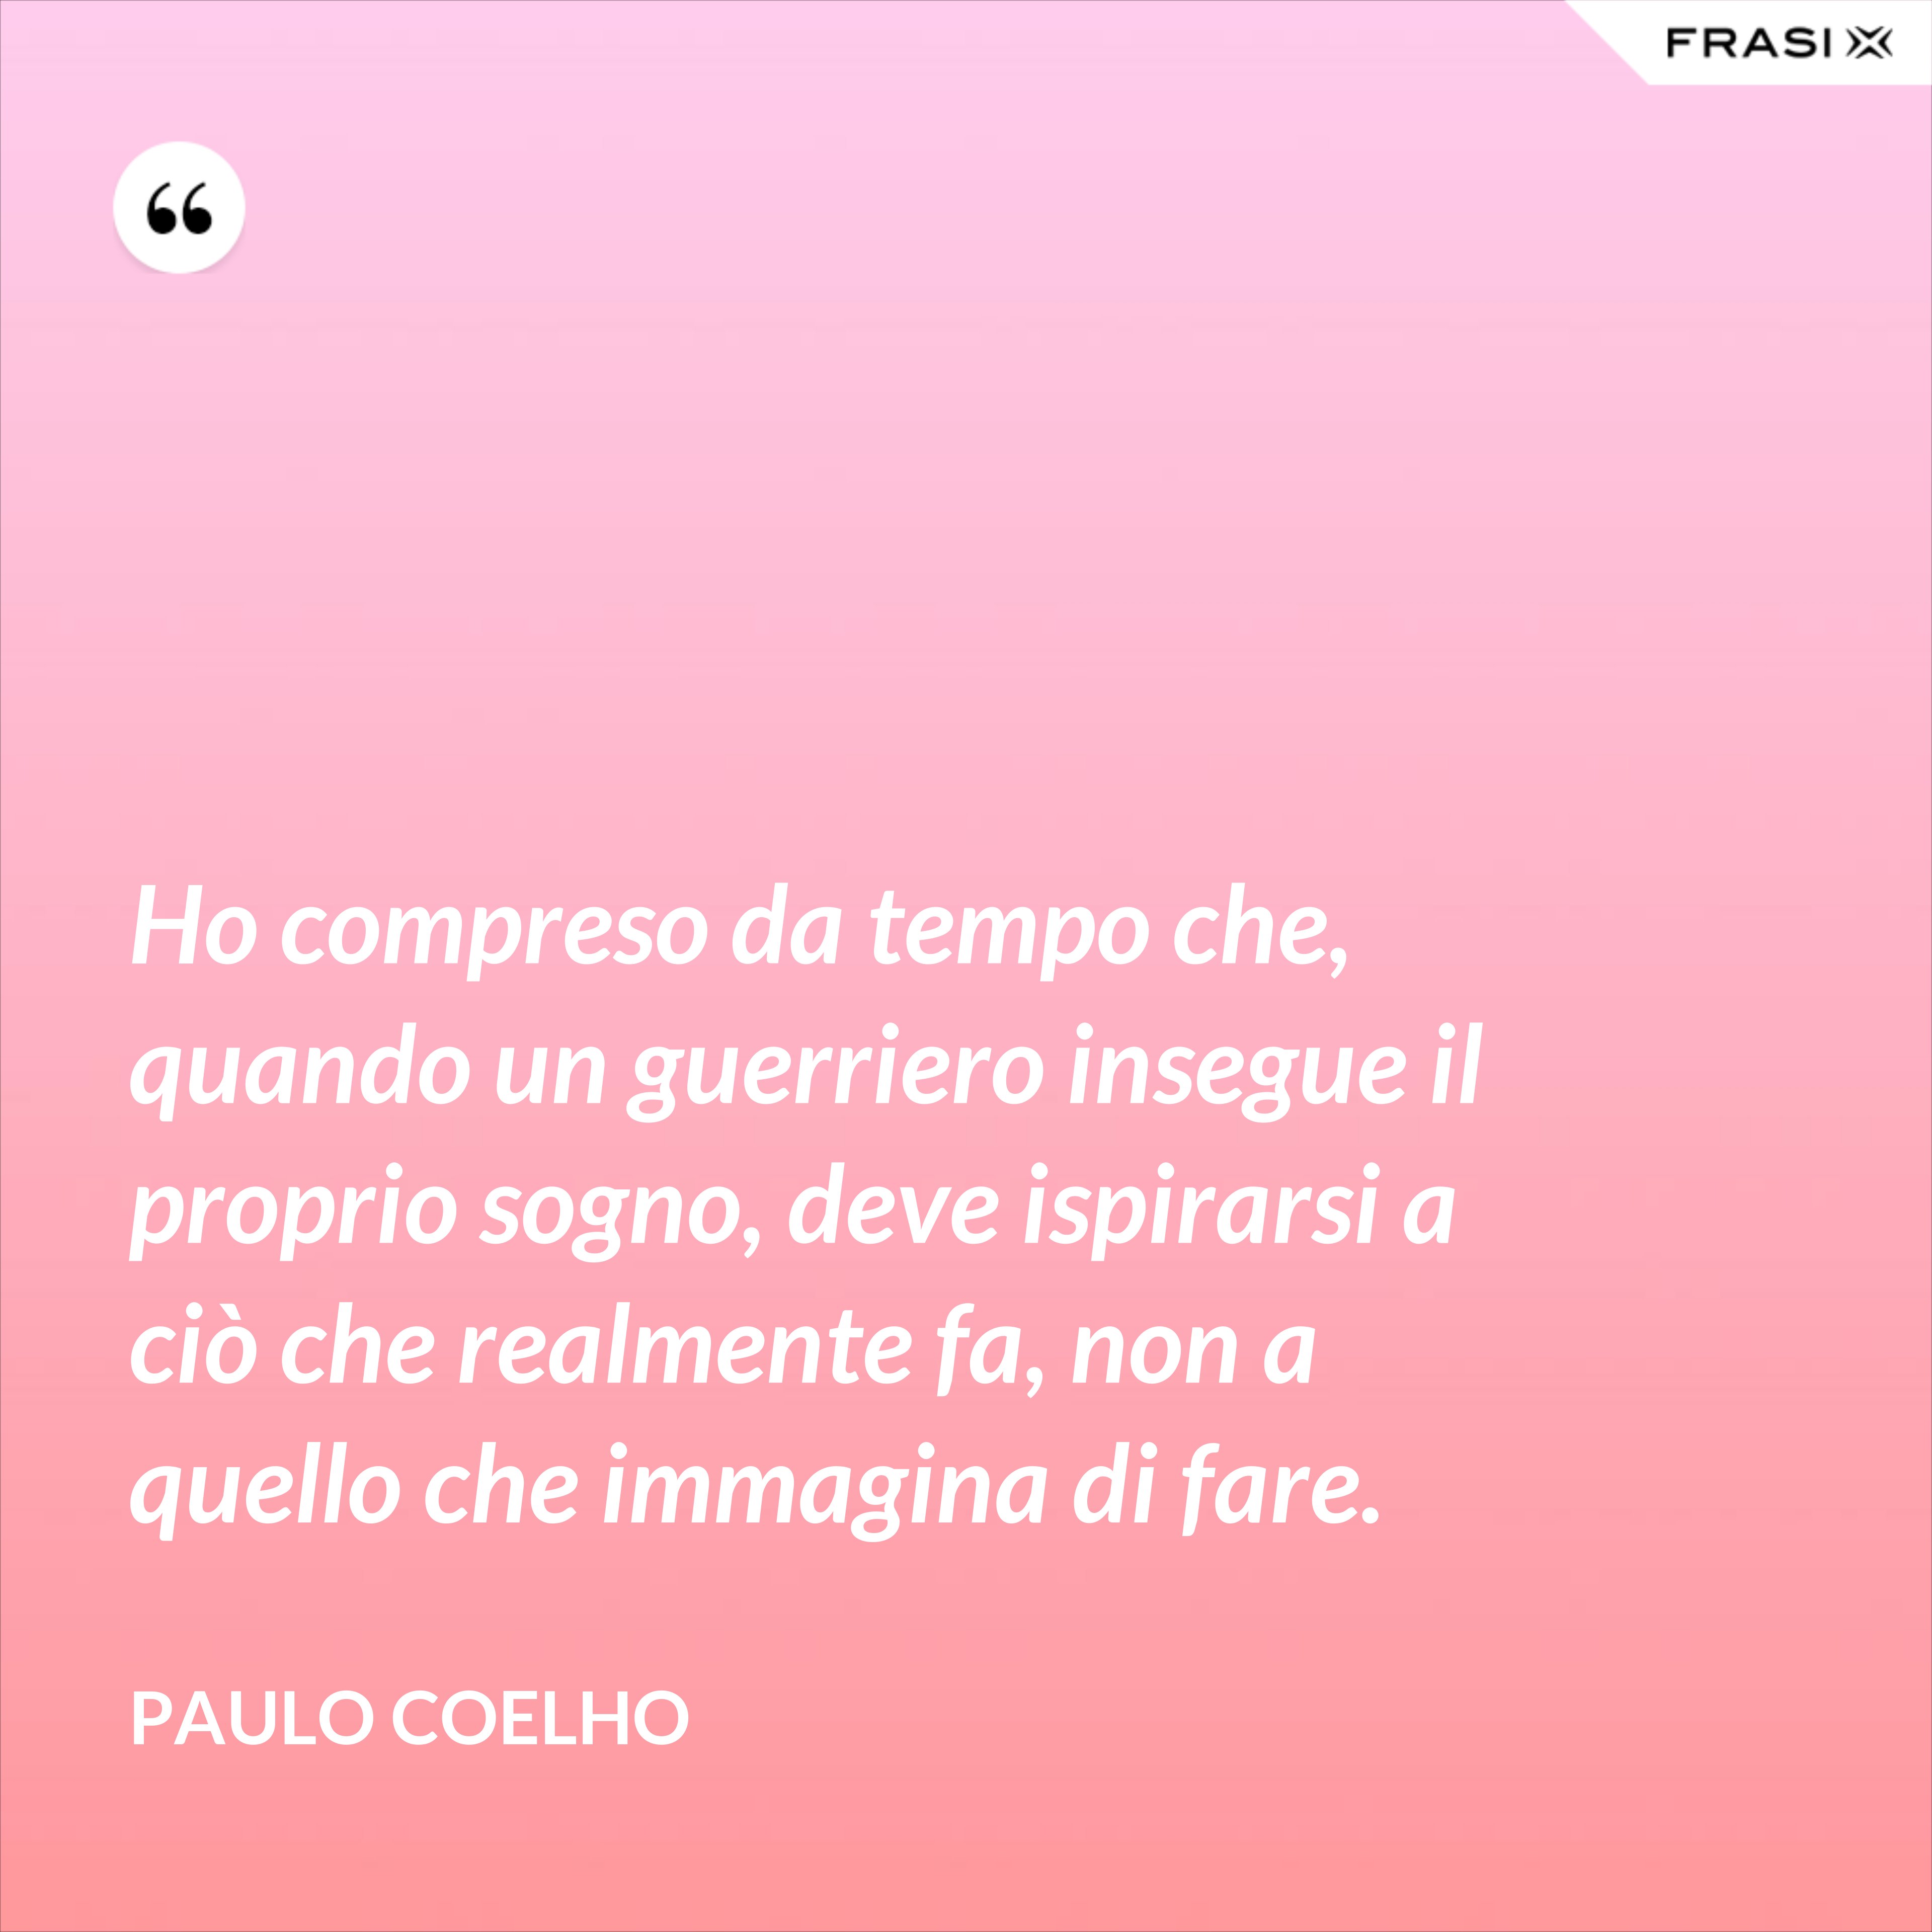 Ho compreso da tempo che, quando un guerriero insegue il proprio sogno, deve ispirarsi a ciò che realmente fa, non a quello che immagina di fare. - Paulo Coelho